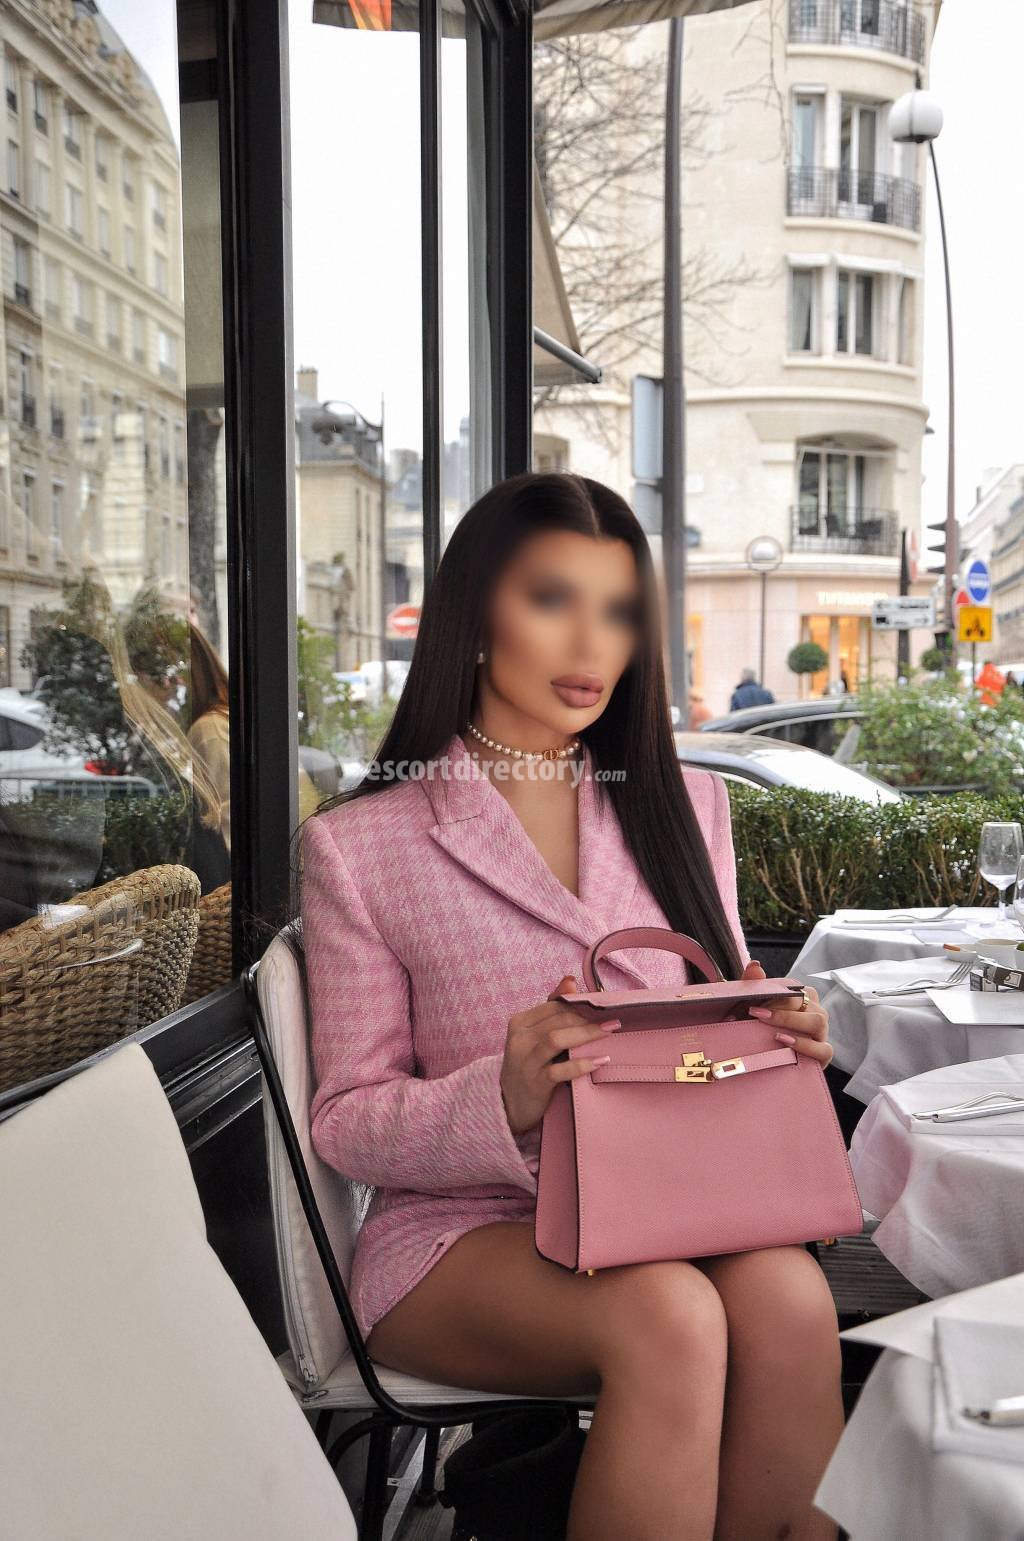 Ayah-Bella Modèle/Ex-modèle escort in Paris offers Branlette services